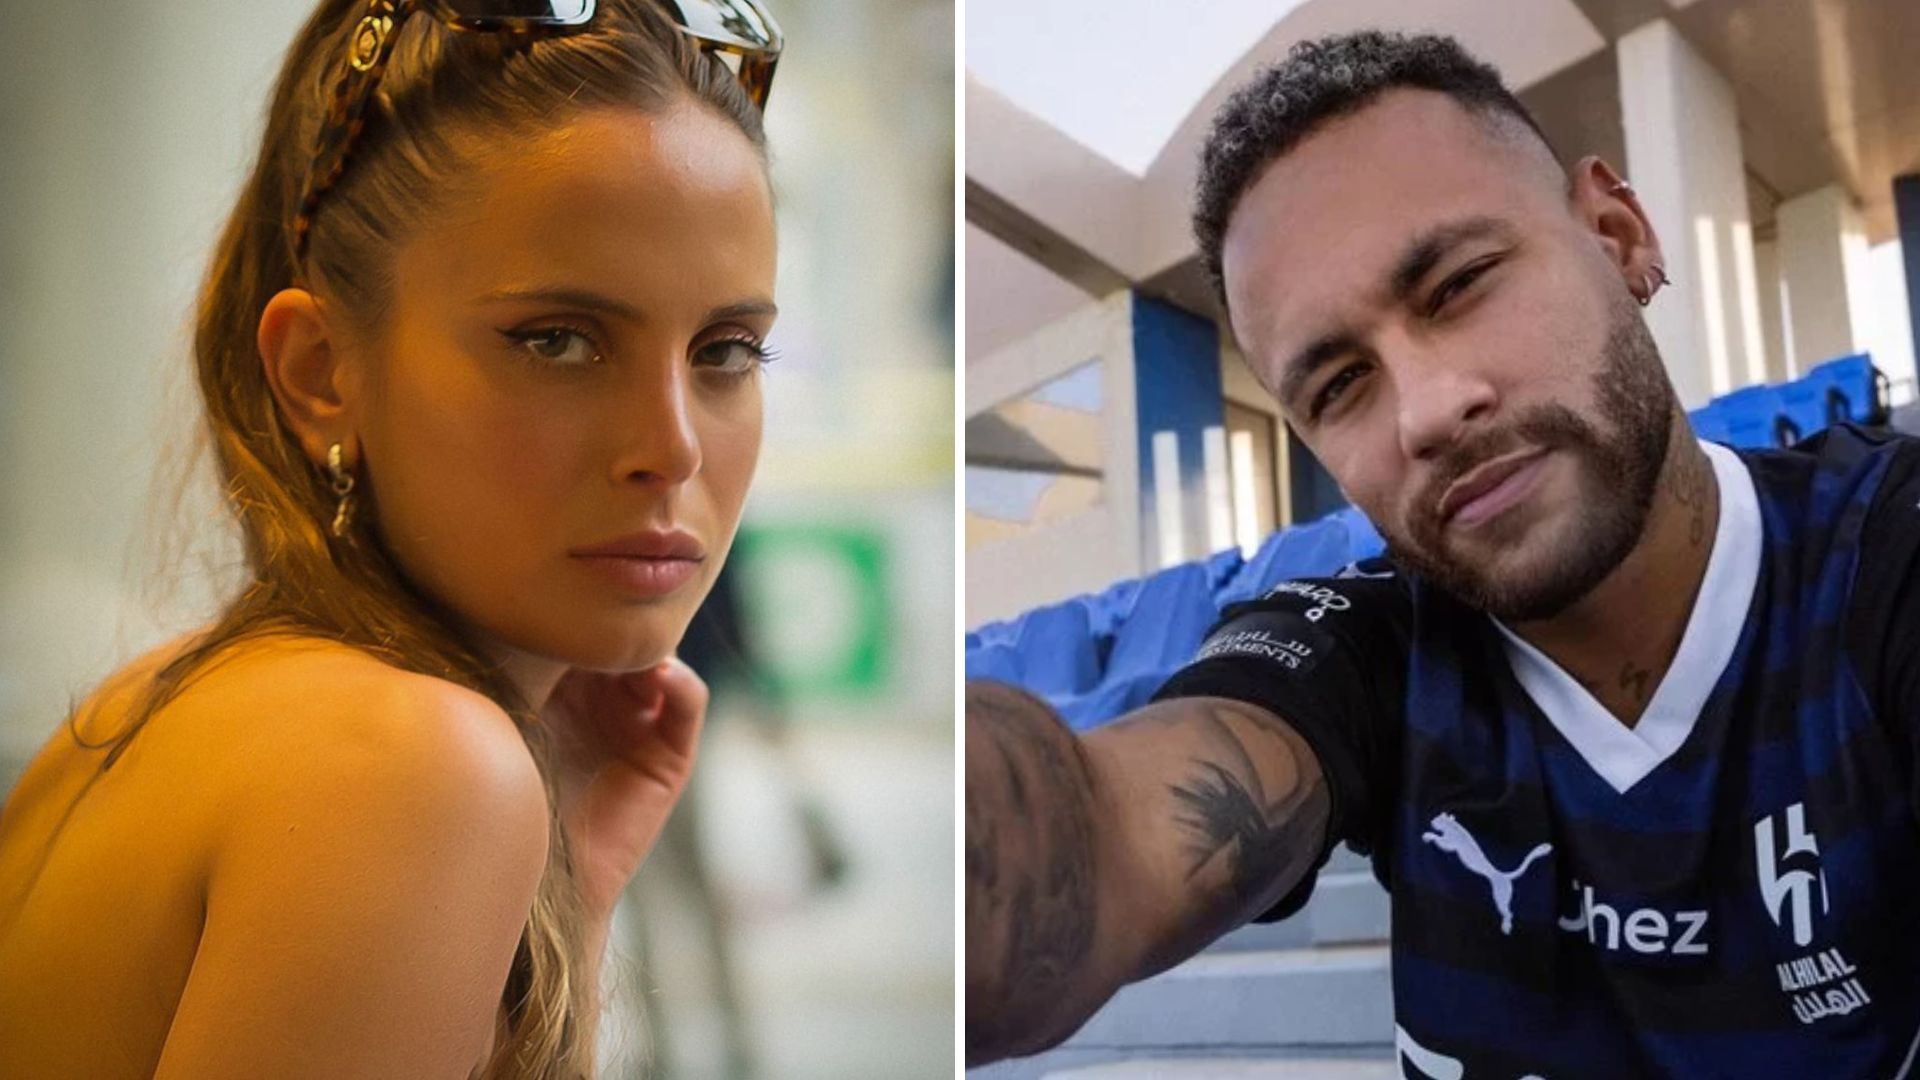 Quem é Carola Gil? Conheça a modelo apontada como suposta amante de Neymar